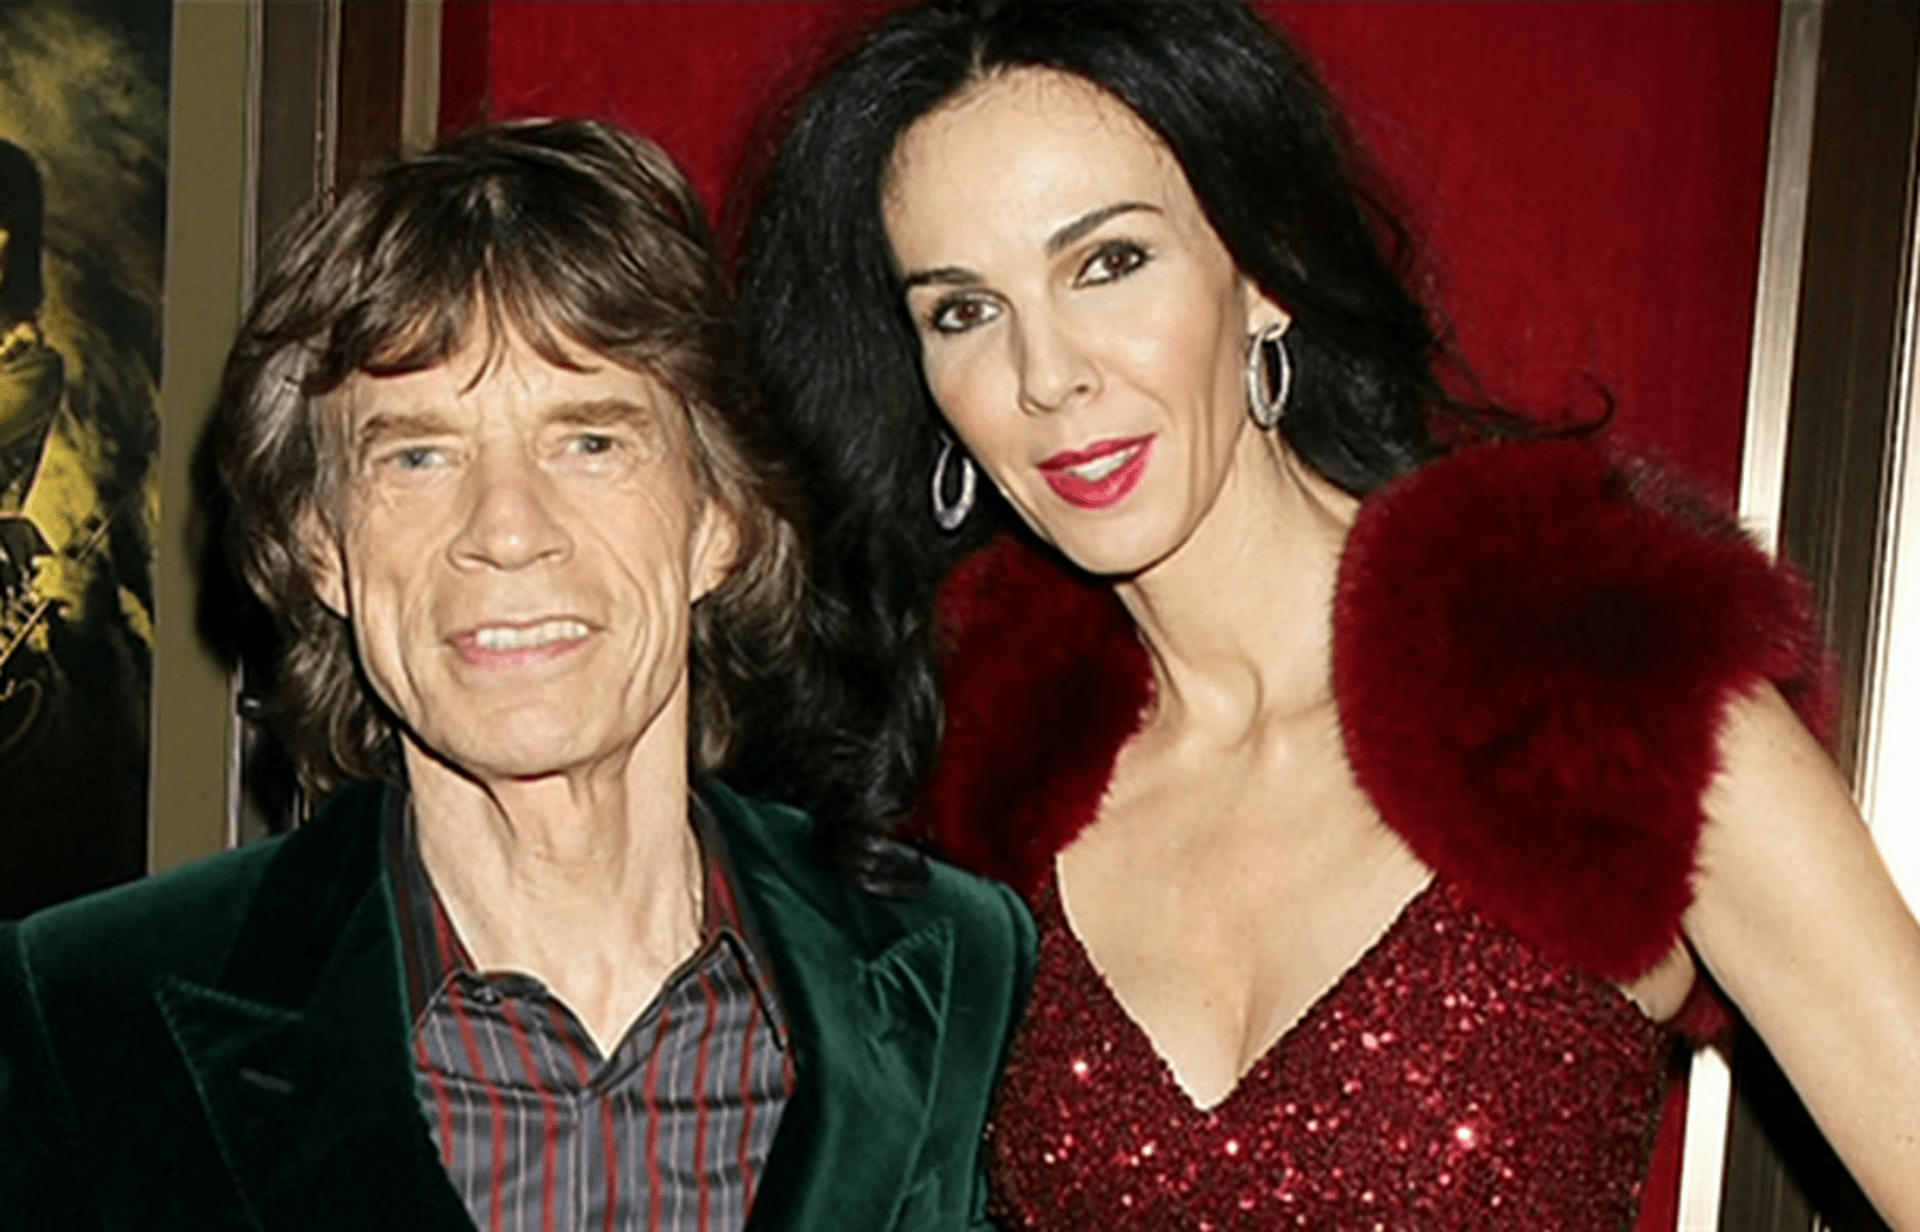 Video VIP zprávy: Poté, co přítelkyně Micka Jaggera spáchala sebevraždu, známý hudebník dva měsíce truchlil a Rolling Stones přestali koncertovat